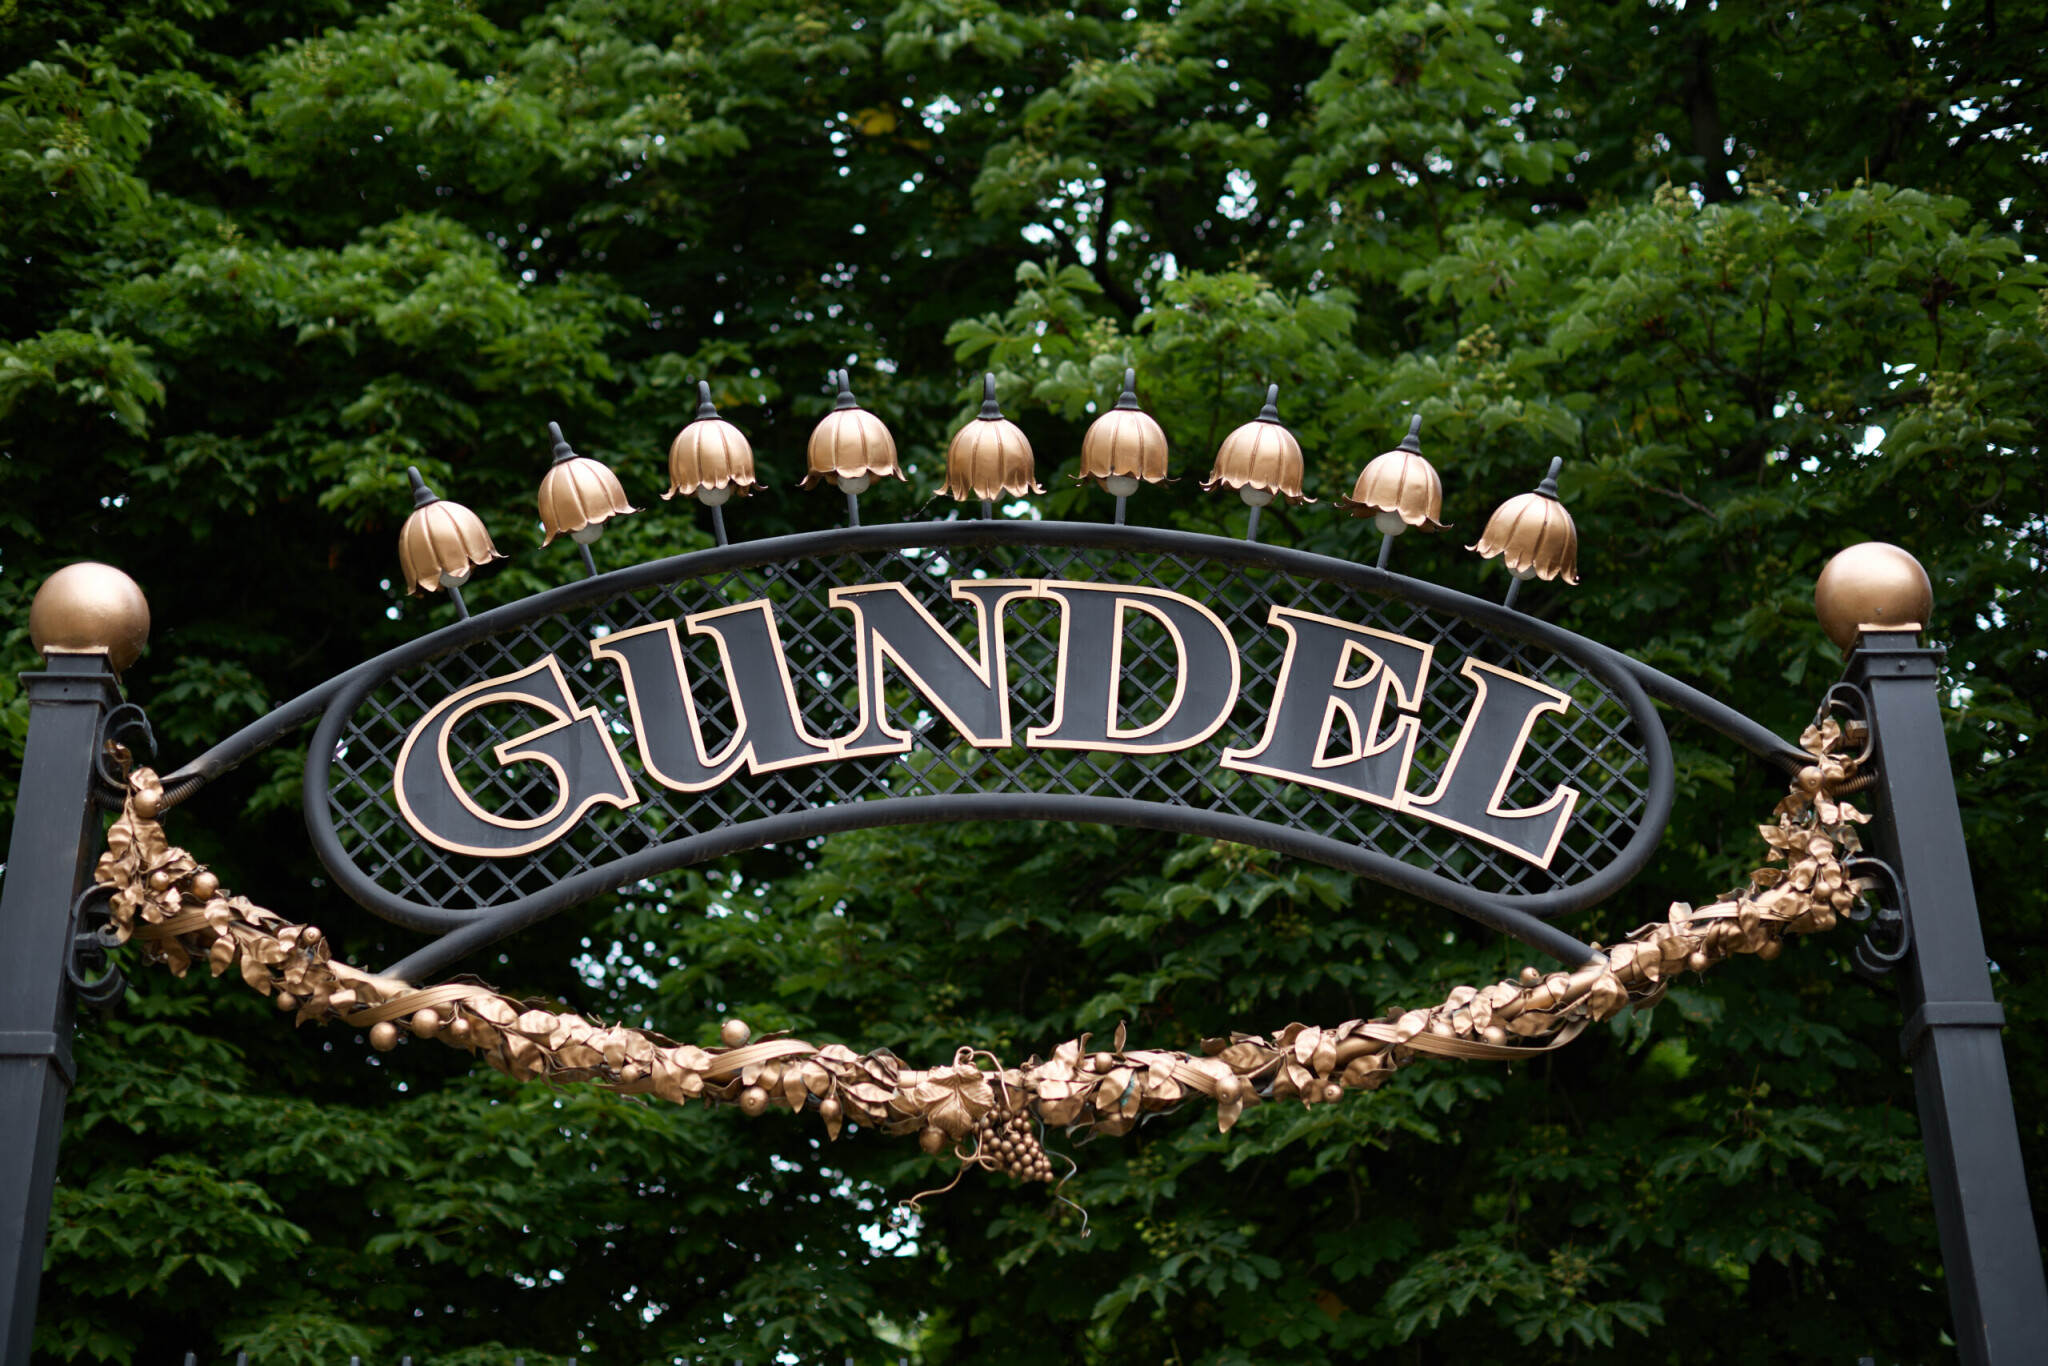 13 kép és történet a 130 éves Gundelből